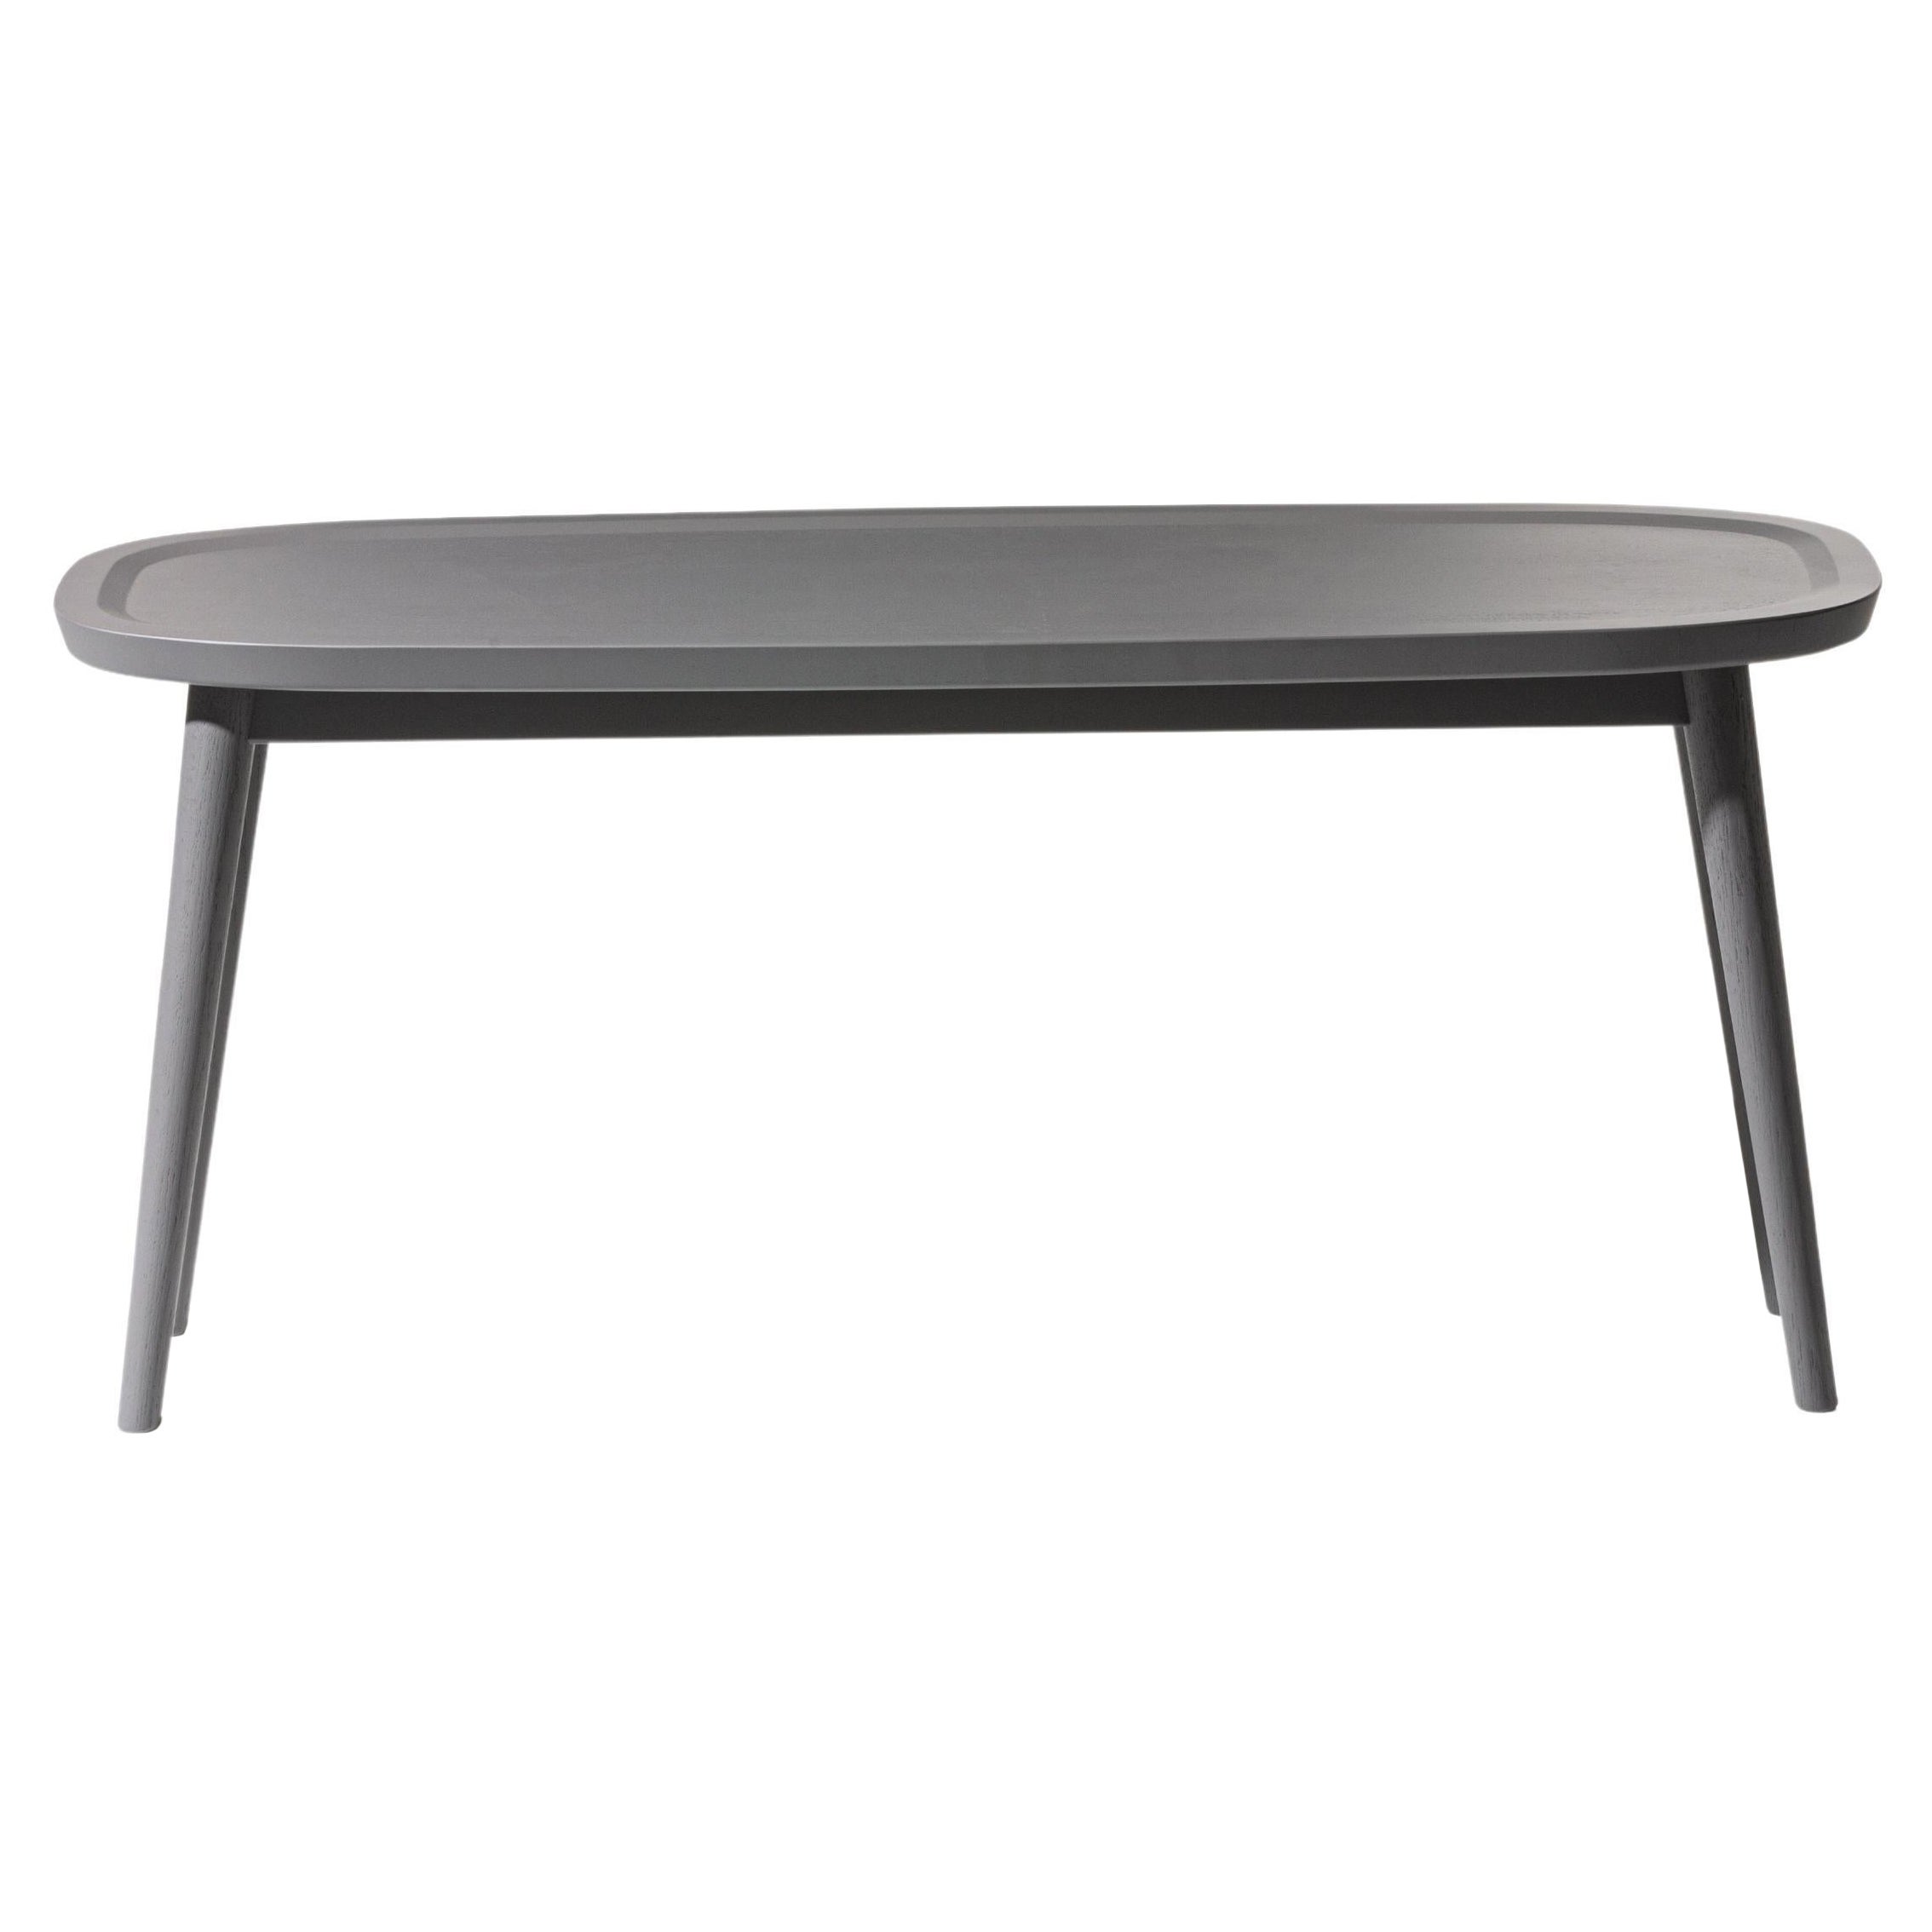 Petite table basse ovale Brick de Gervasoni en chêne laqué gris par Paola Navone